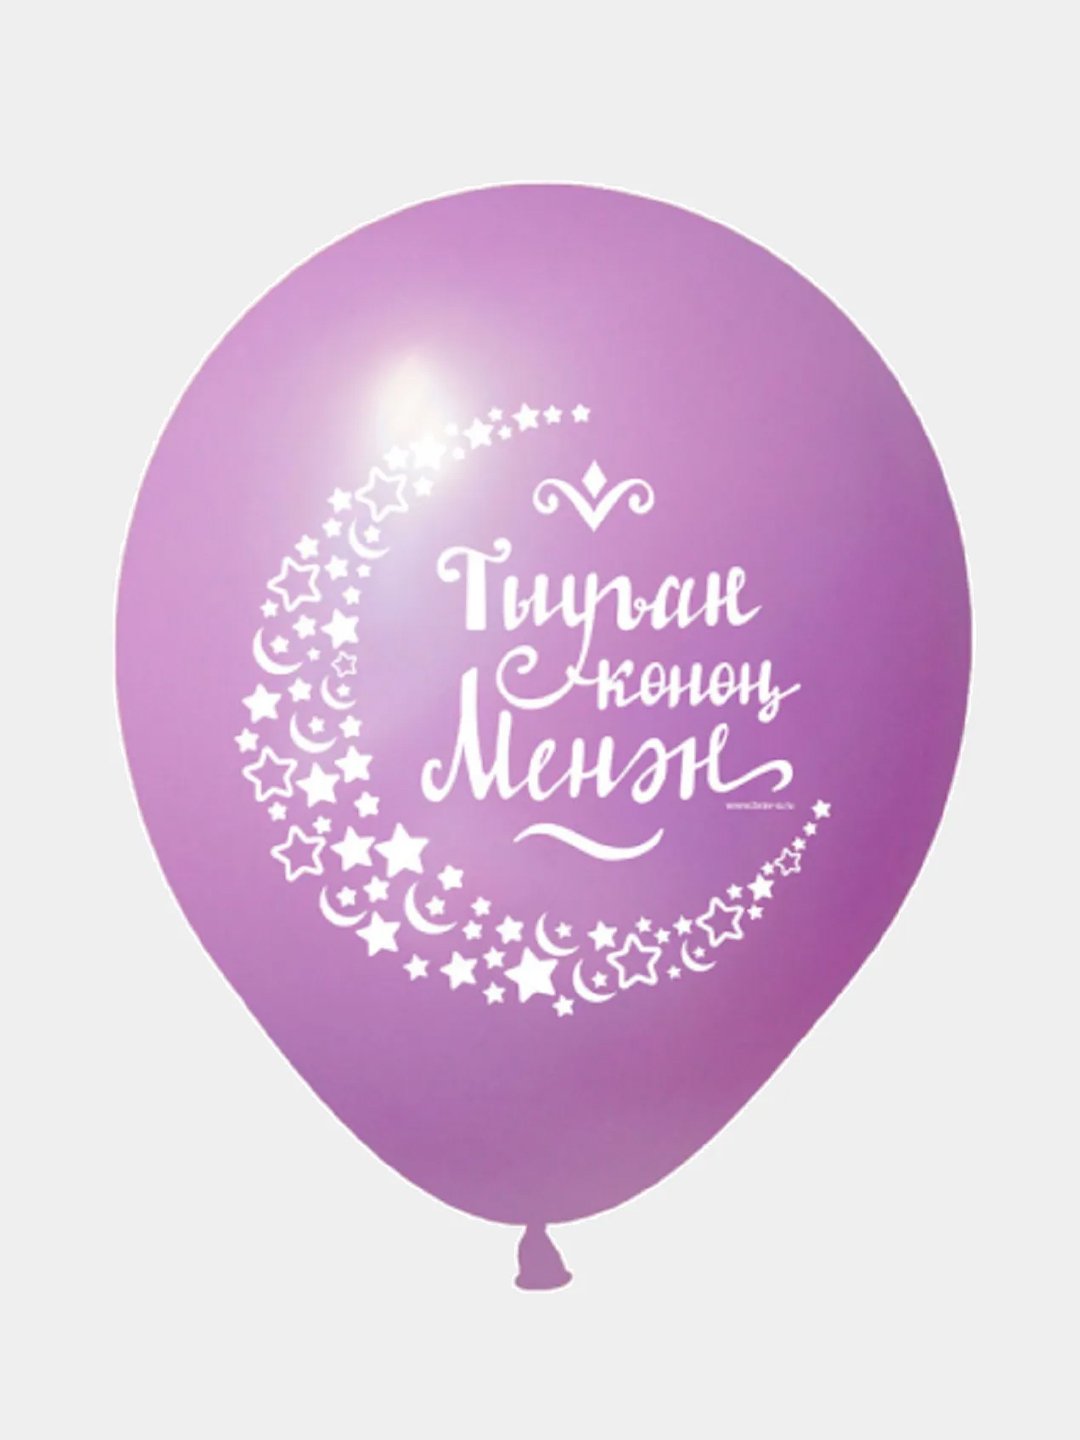 Поздравления на башкирском языке – на день рождения, на юбилей, с рождением ребенка